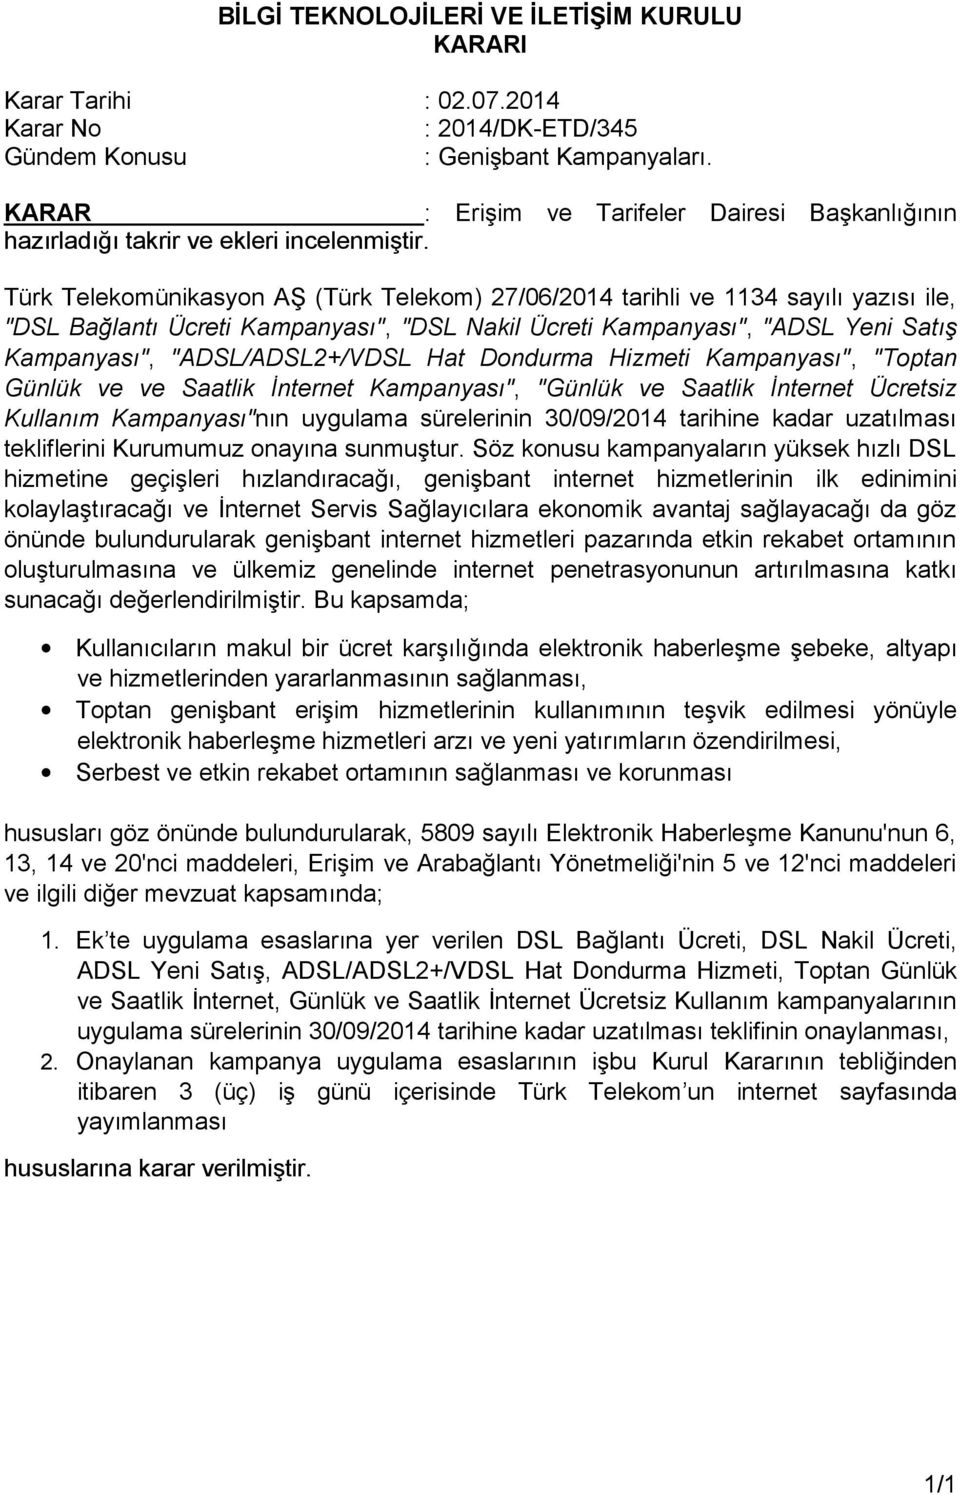 Türk Telekomünikasyon AŞ (Türk Telekom) 27/06/2014 tarihli ve 1134 sayılı yazısı ile, "DSL Bağlantı Ücreti Kampanyası", "DSL Nakil Ücreti Kampanyası", "ADSL Yeni Satış Kampanyası", "ADSL/ADSL2+/VDSL